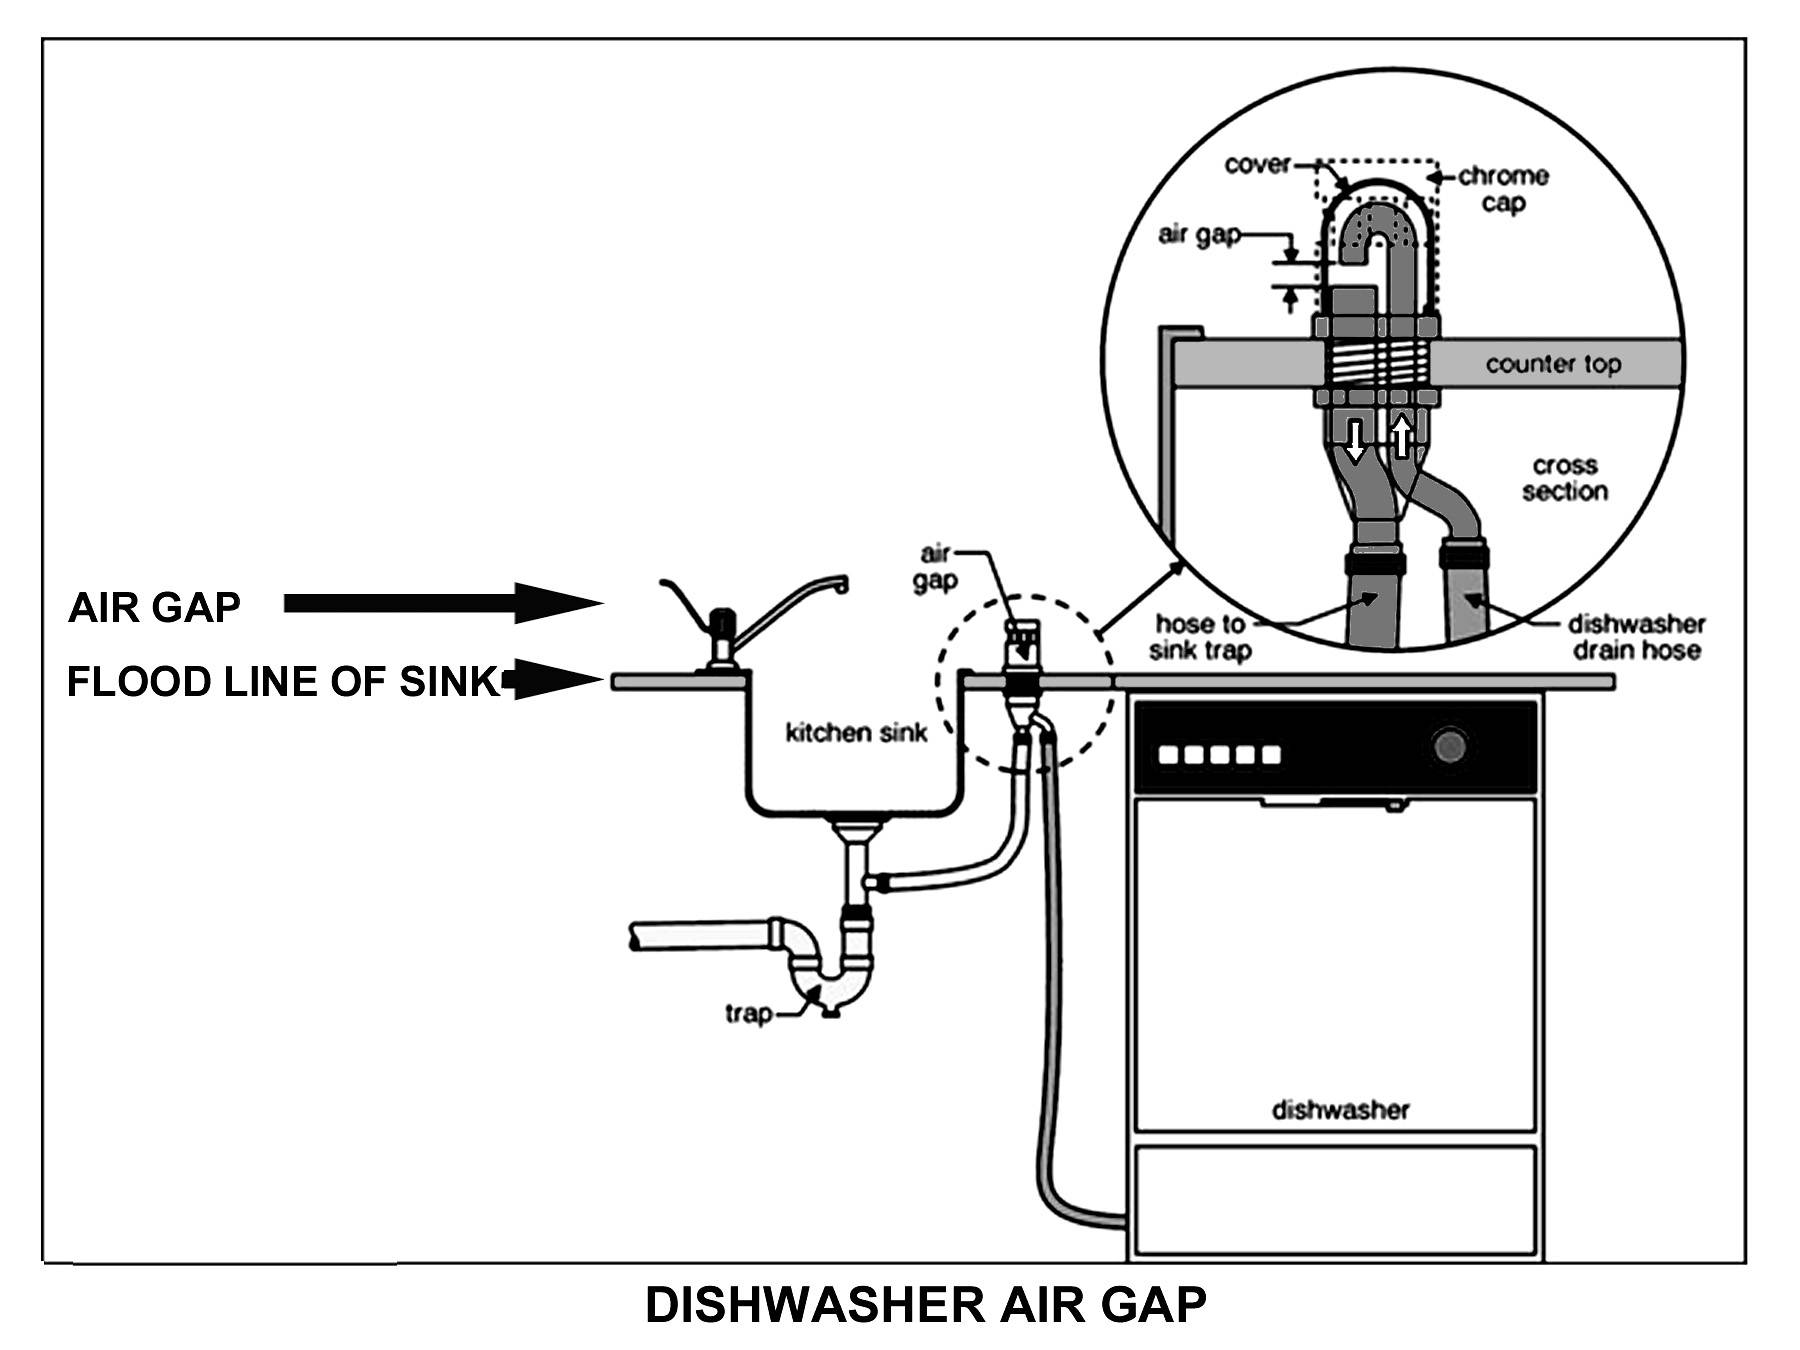 Как правильно осуществить выбор и самостоятельную установку посудомоечной машины?